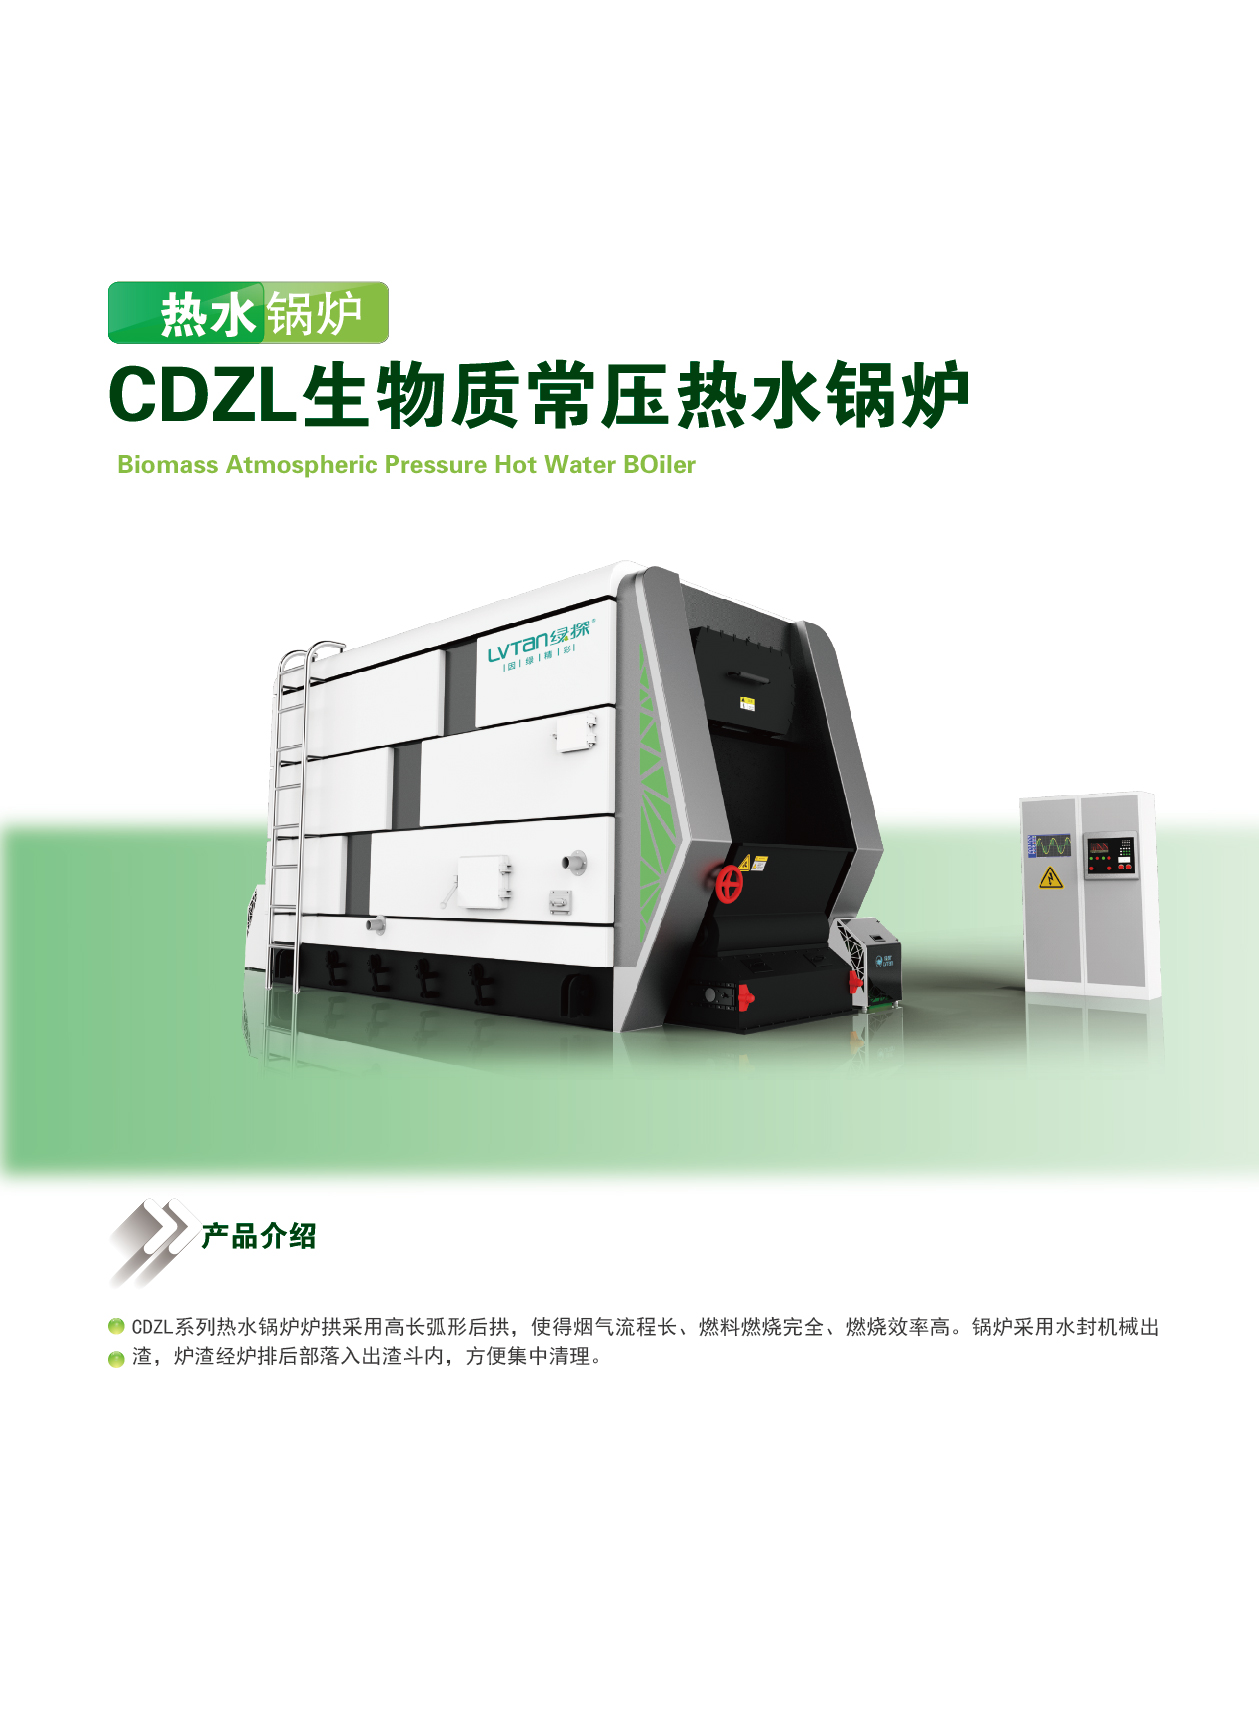 CDZL生物质常压热水锅炉